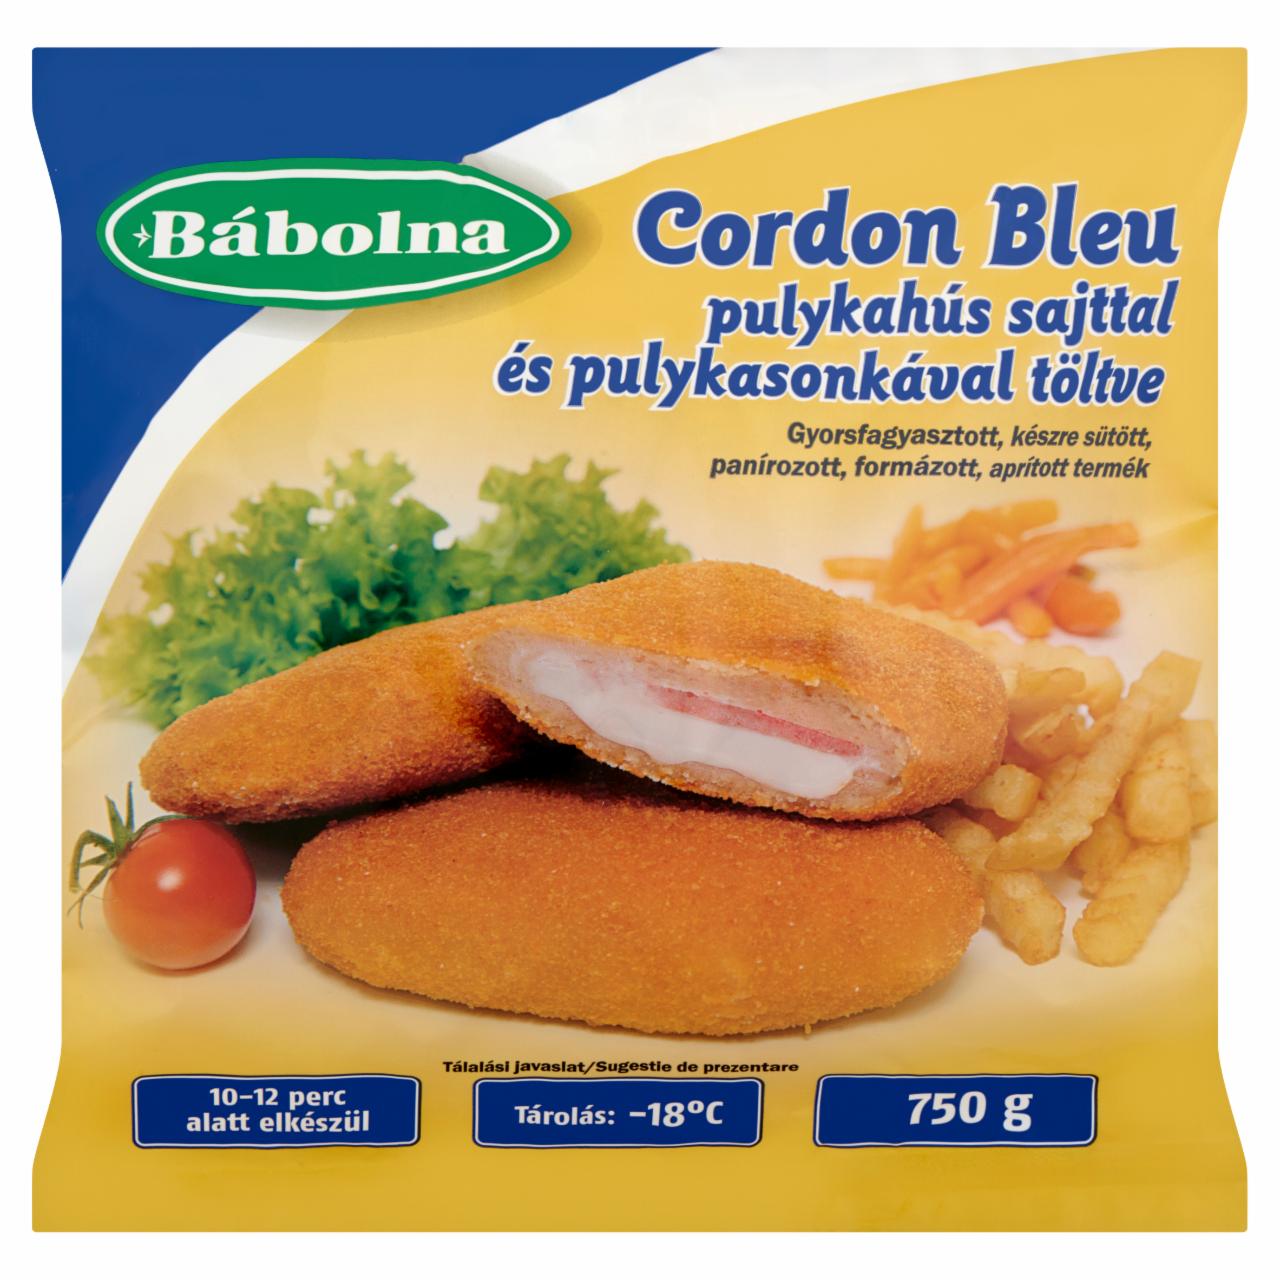 Képek - Bábolna Cordon Bleu gyorsfagyasztott, készre sütött pulykahús sajttal és pulykasonkával töltve 750 g